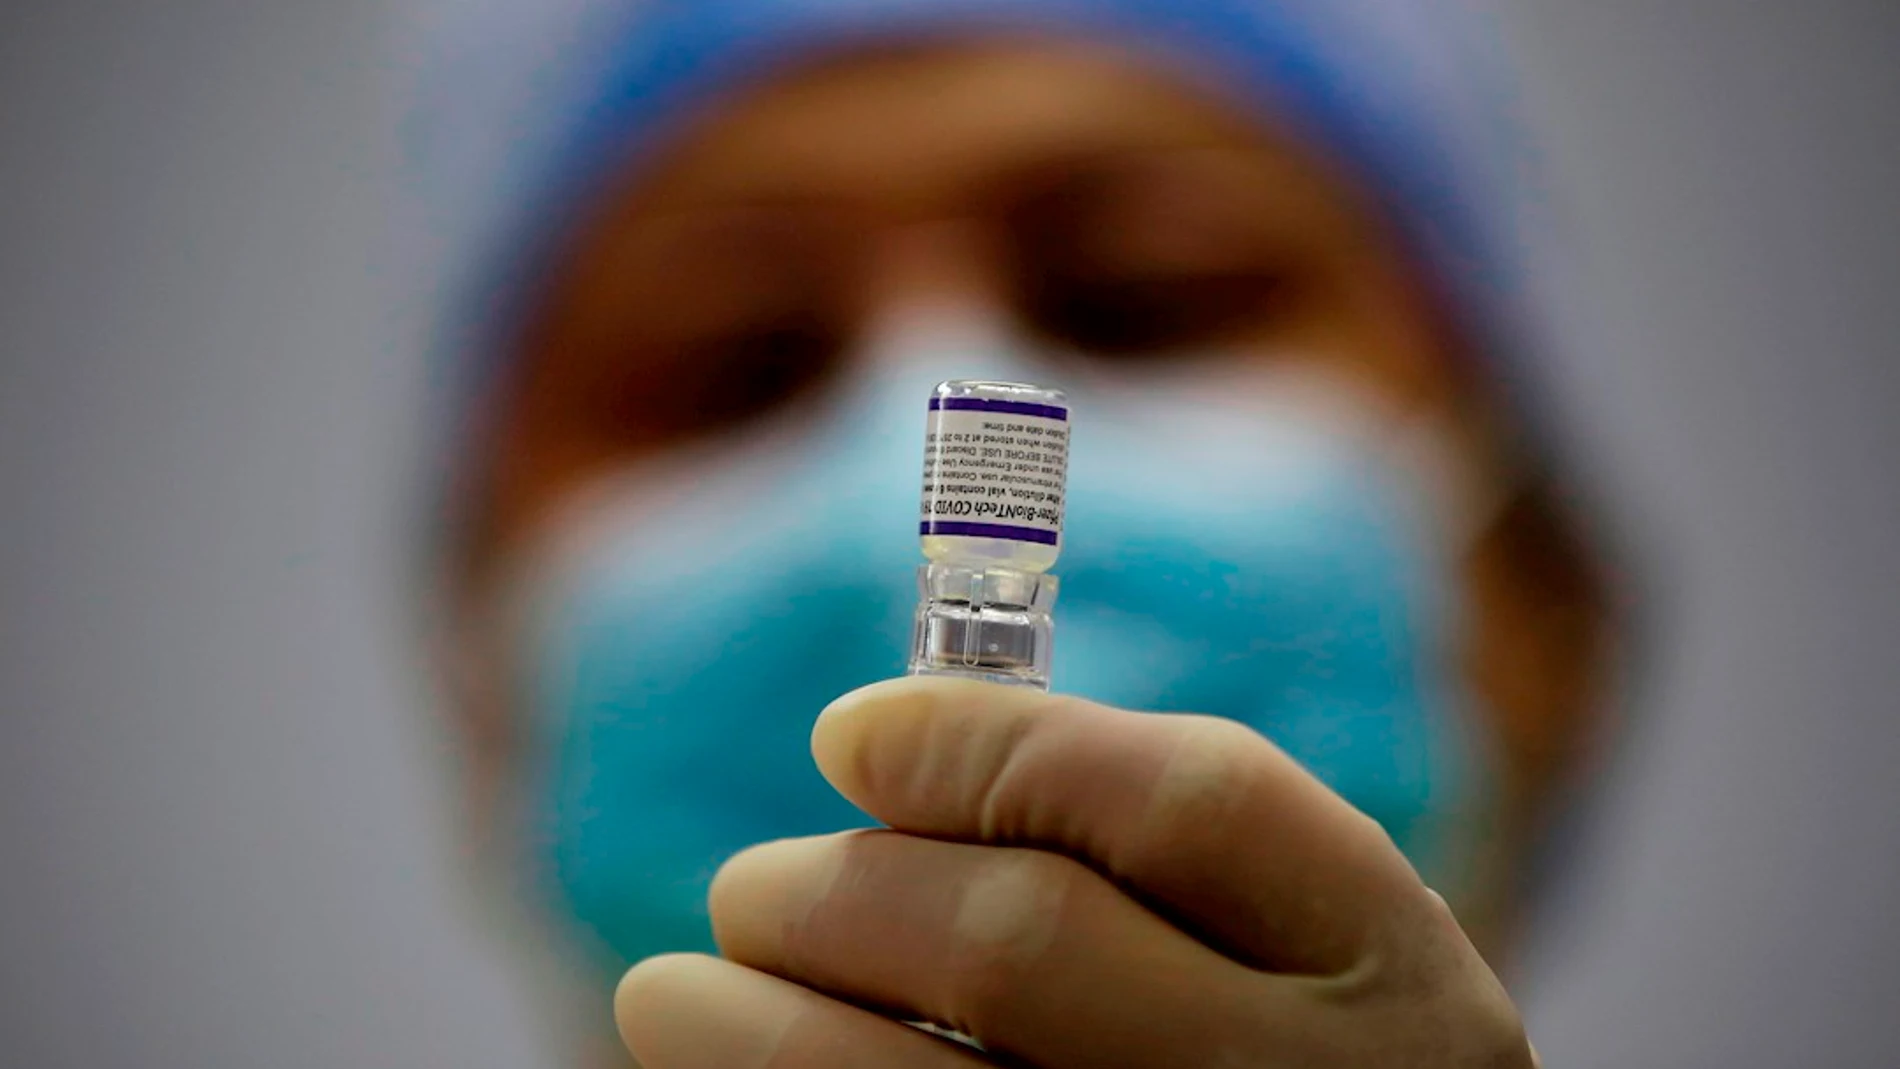 Empiezan los ensayos clínicos de Oravax, la vacuna oral israelí contra la Covid-19